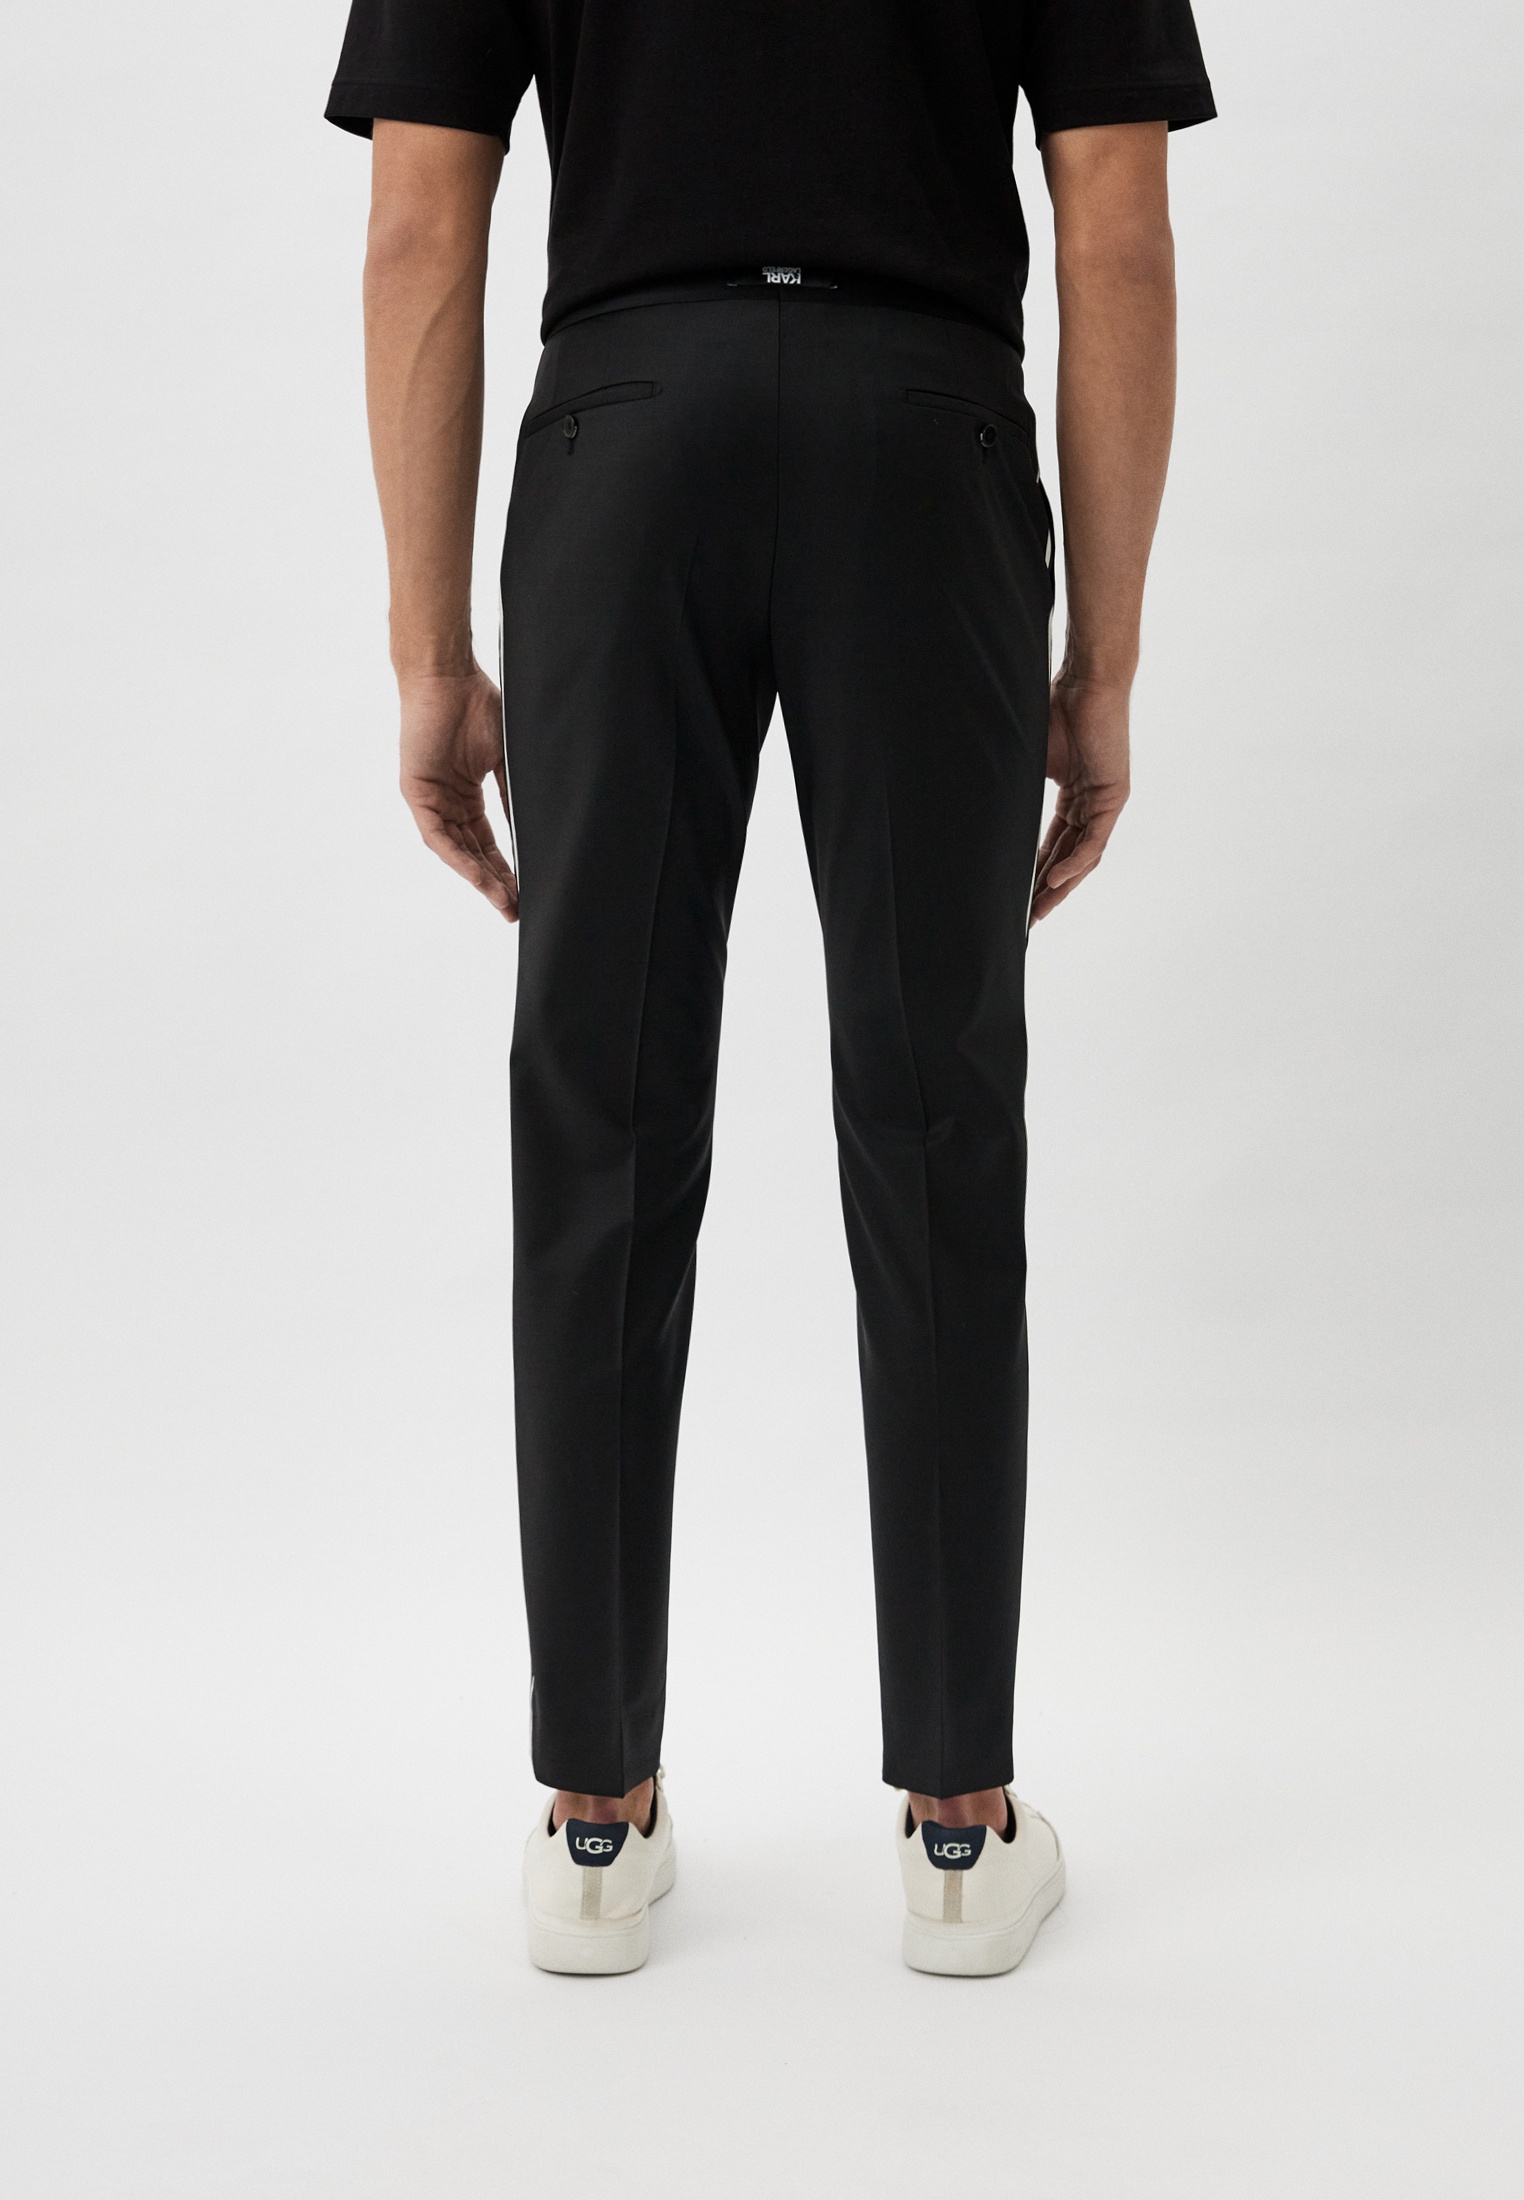 Мужские повседневные брюки Karl Lagerfeld (Карл Лагерфельд) 255075-541096: изображение 3